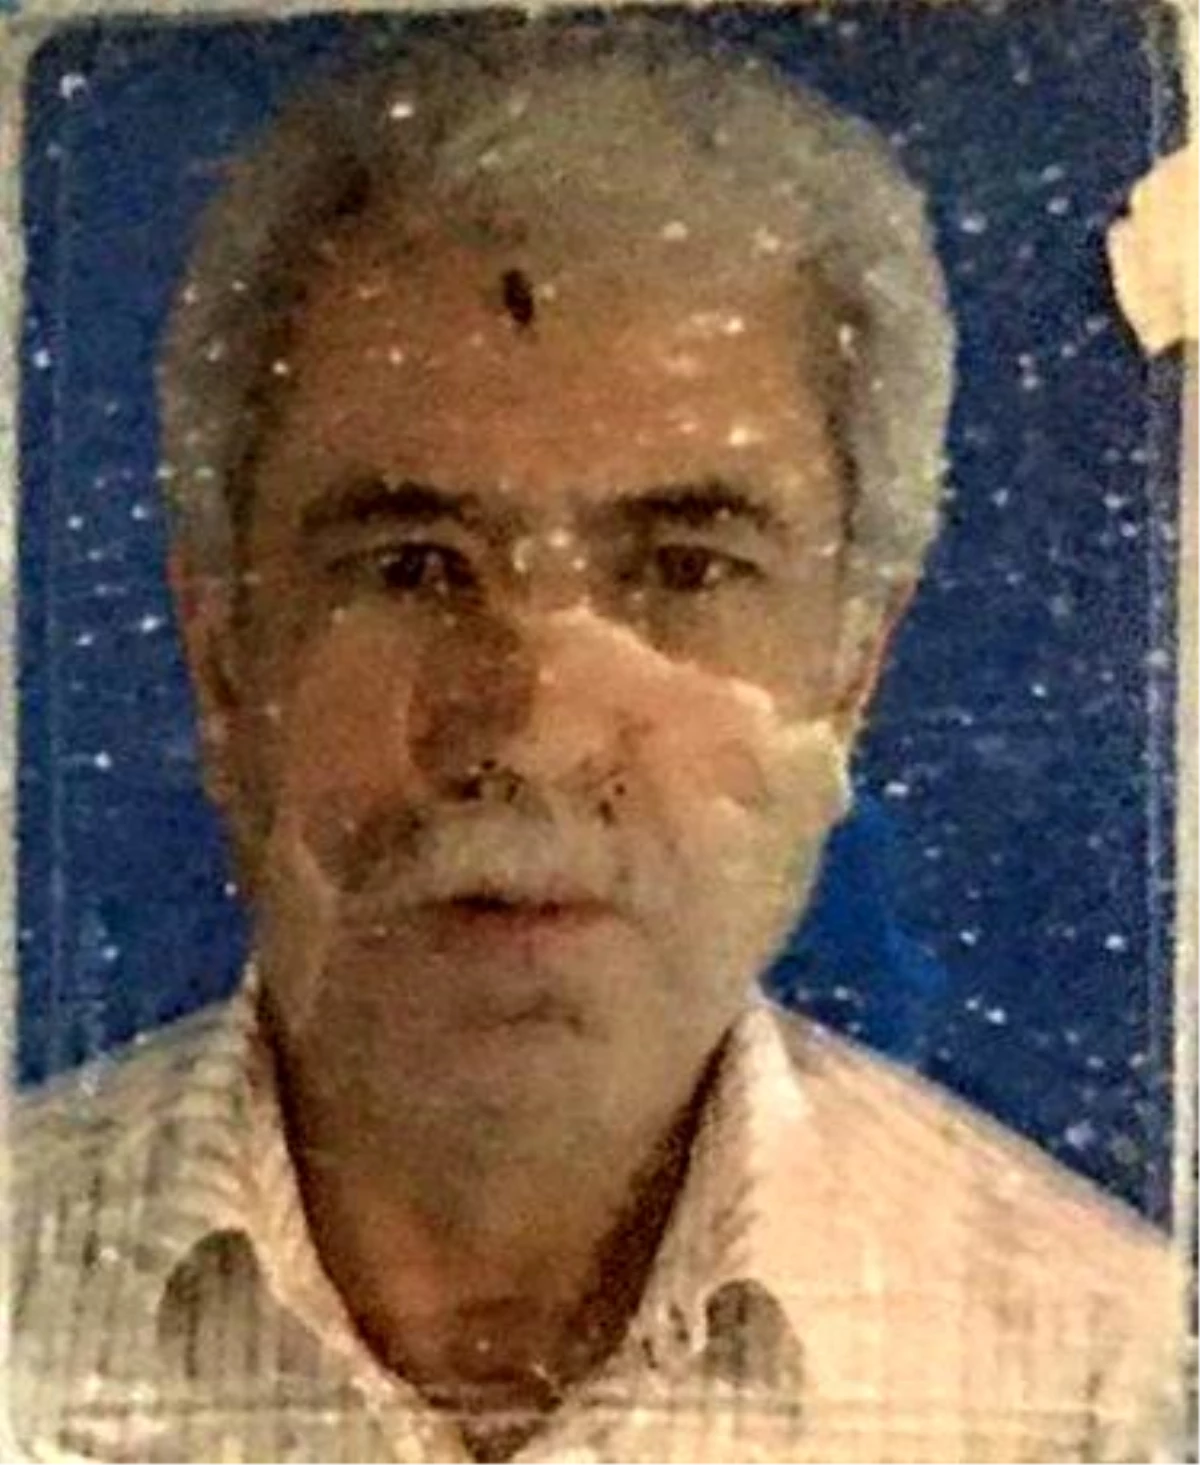 Denizli'de Elektrikli Isıtıcıdan Çıkan Yangında Yaşlı Adam Hayatını Kaybetti